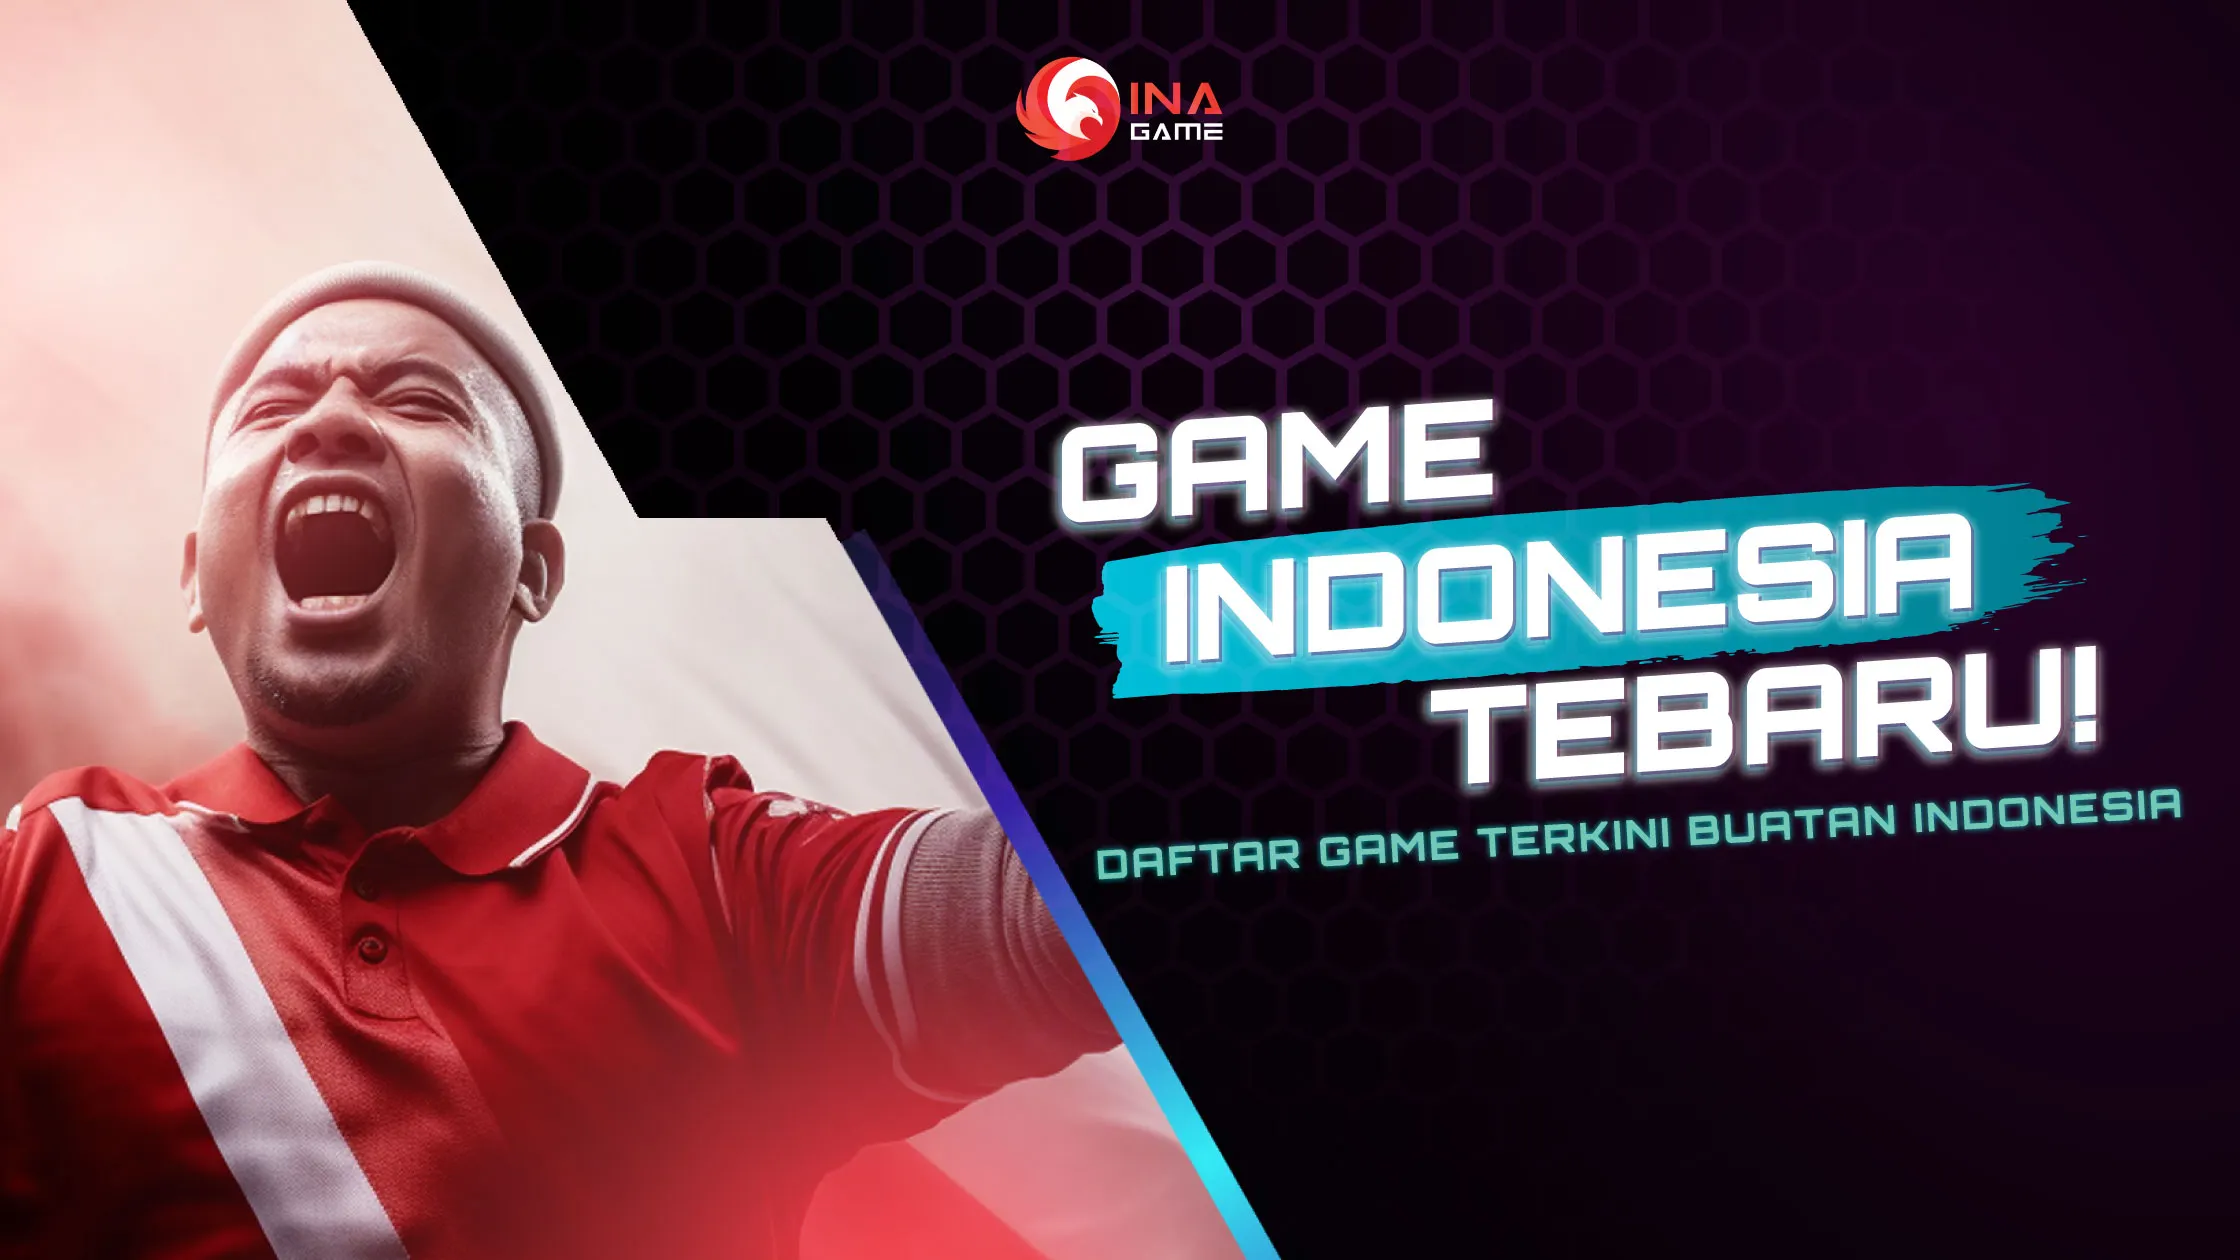 Game game Indonesia Terbaru Daftar Game Terkini Buatan Indonesia.webp